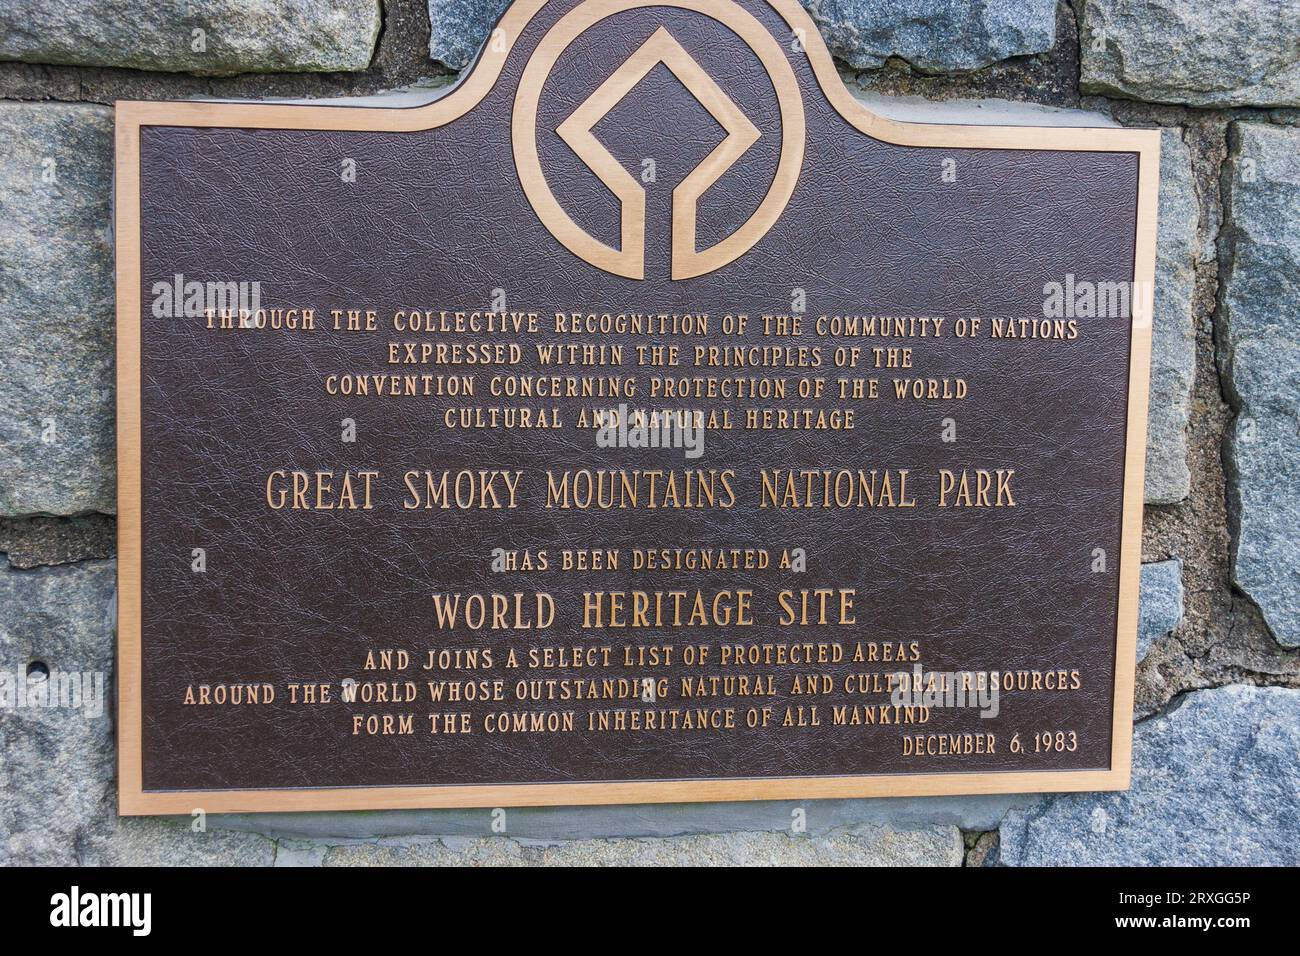 Schilder im Great Smokey Mountains National Park, die ökologische und Biosphärenzertifizierungen sowie Auszeichnungen zum Weltkulturerbe enthalten. Stockfoto